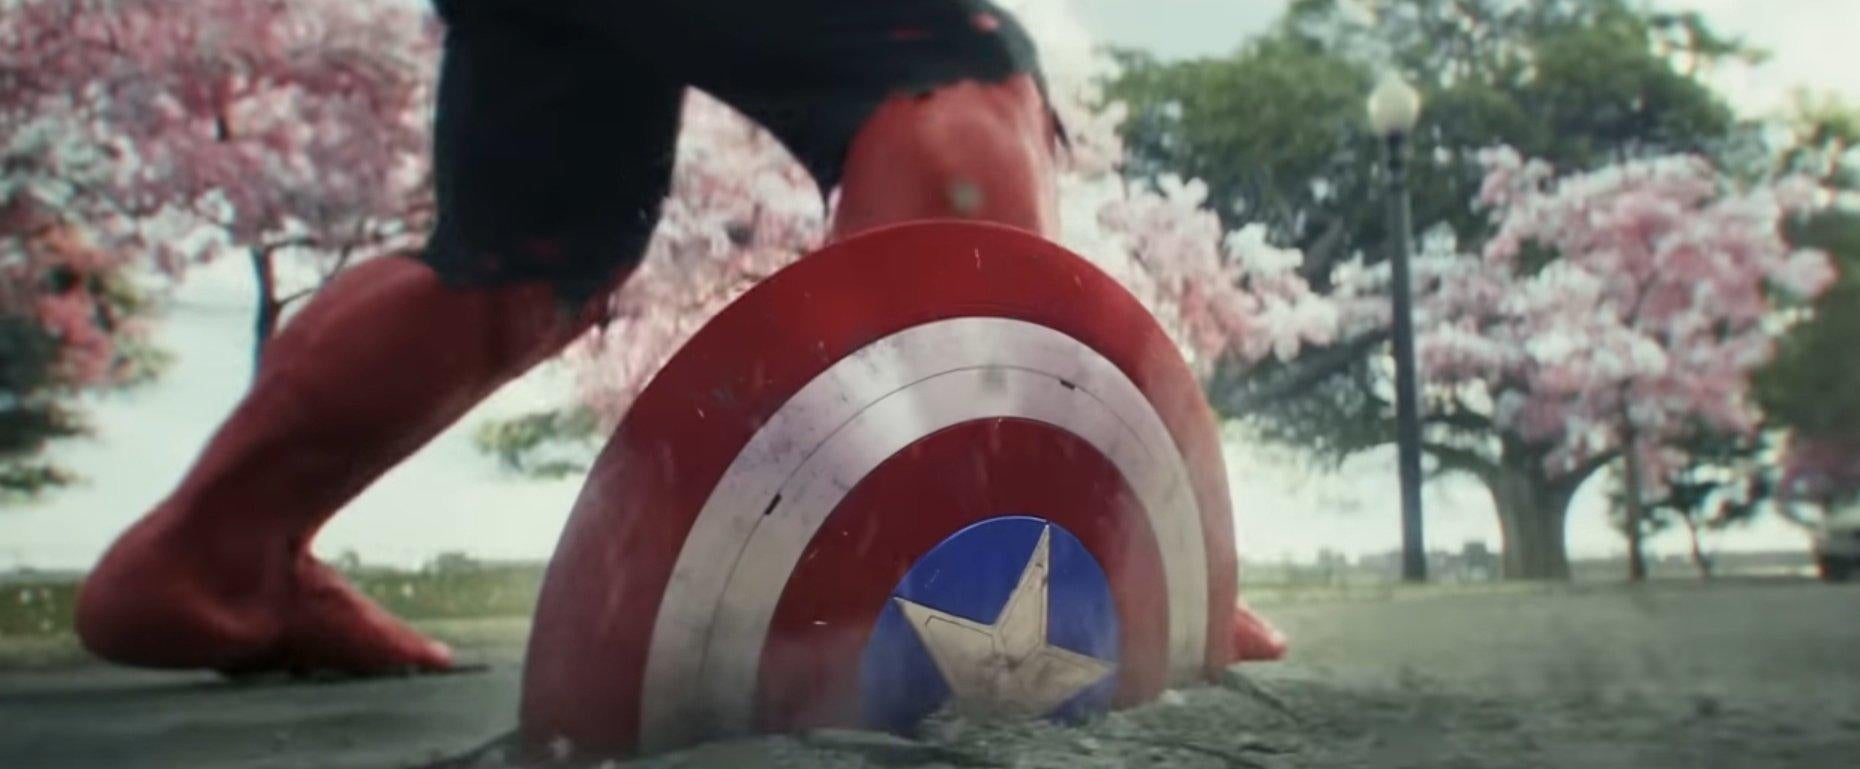 captain-america-4-red-hulk-teaser-trailer